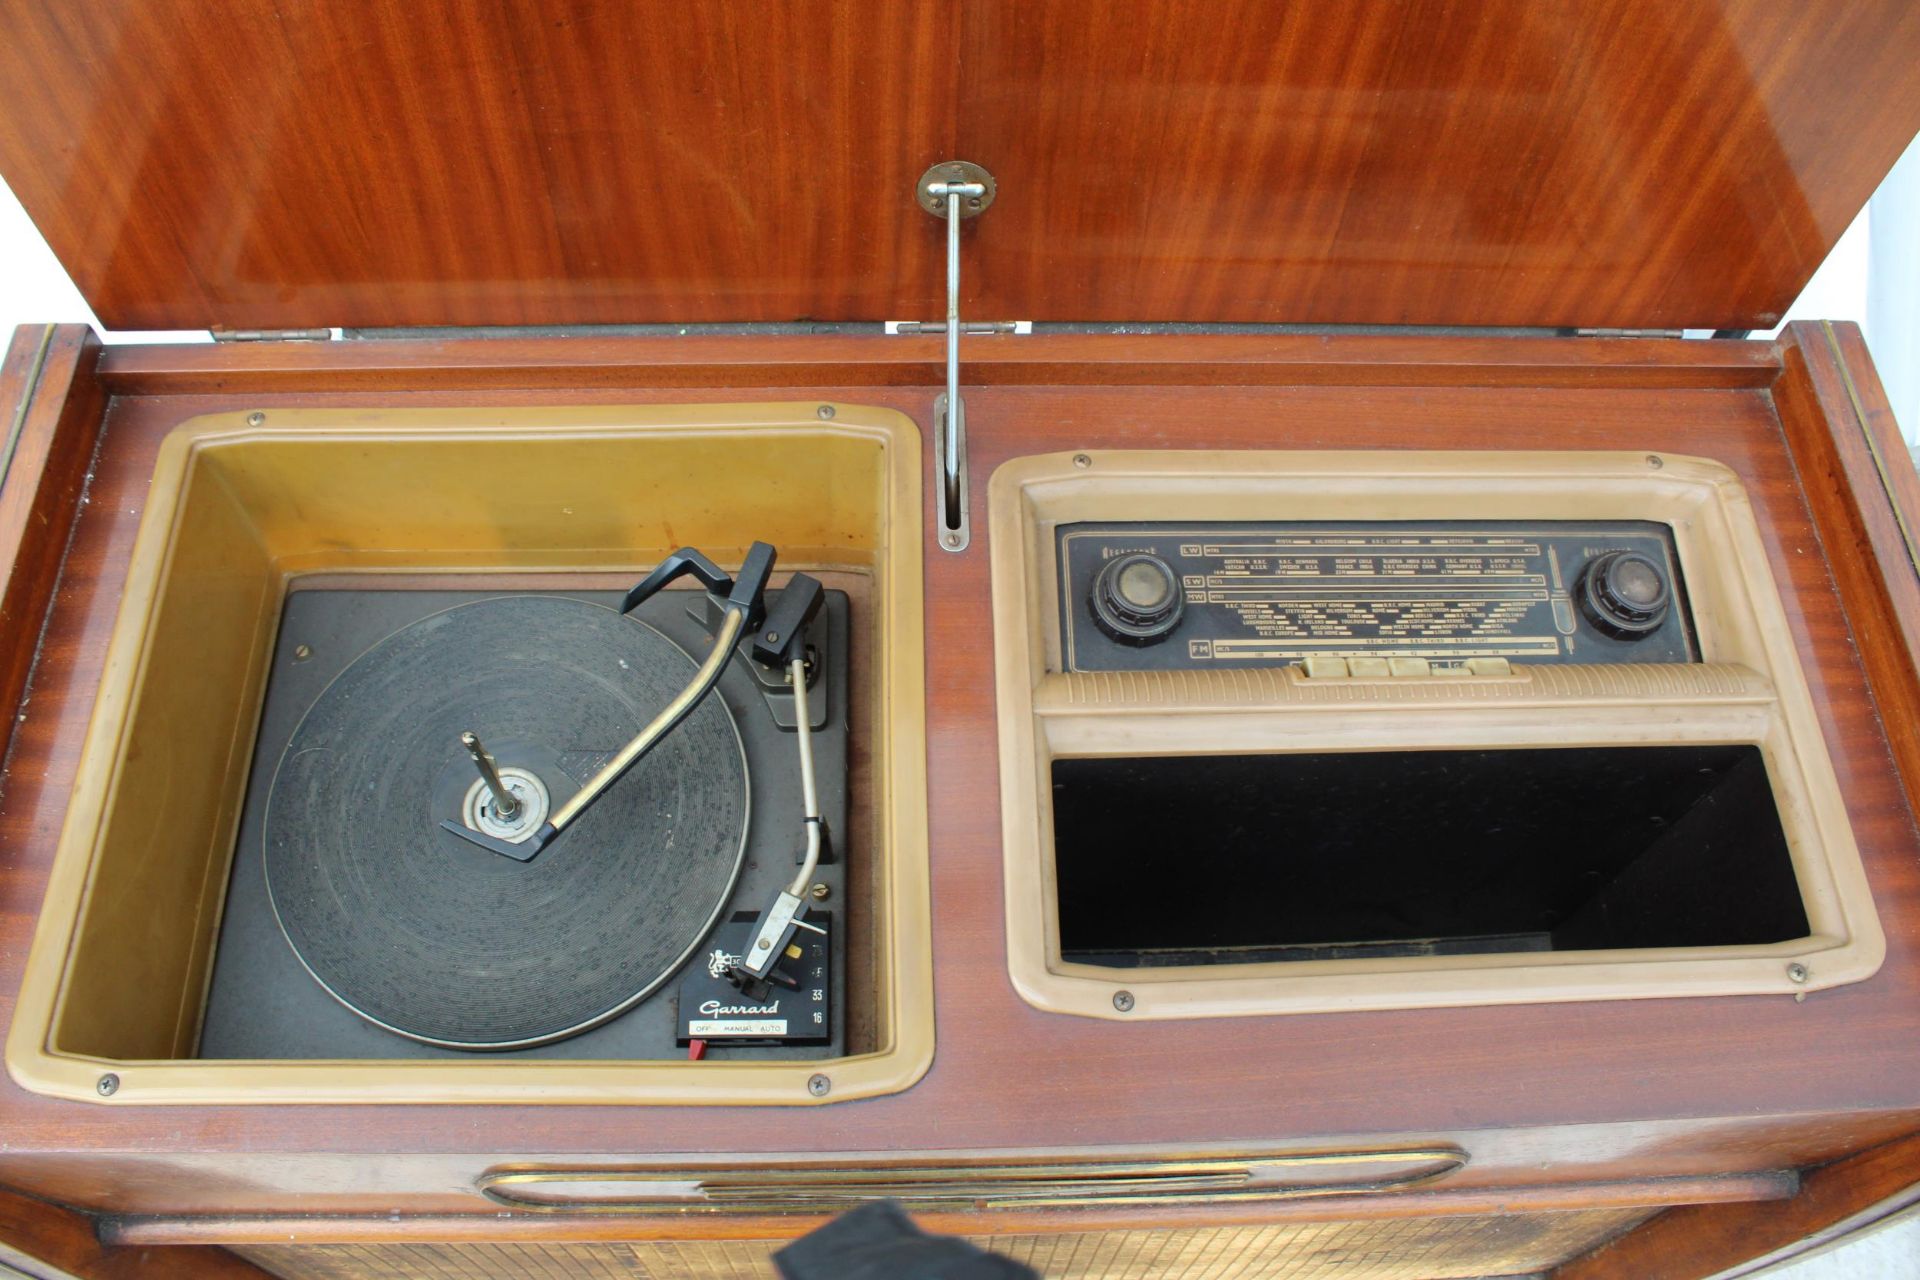 A VINTAGE MID CENTURY REGENTONE RADIOGRAM WITH A GARRARD DECK - Image 2 of 6